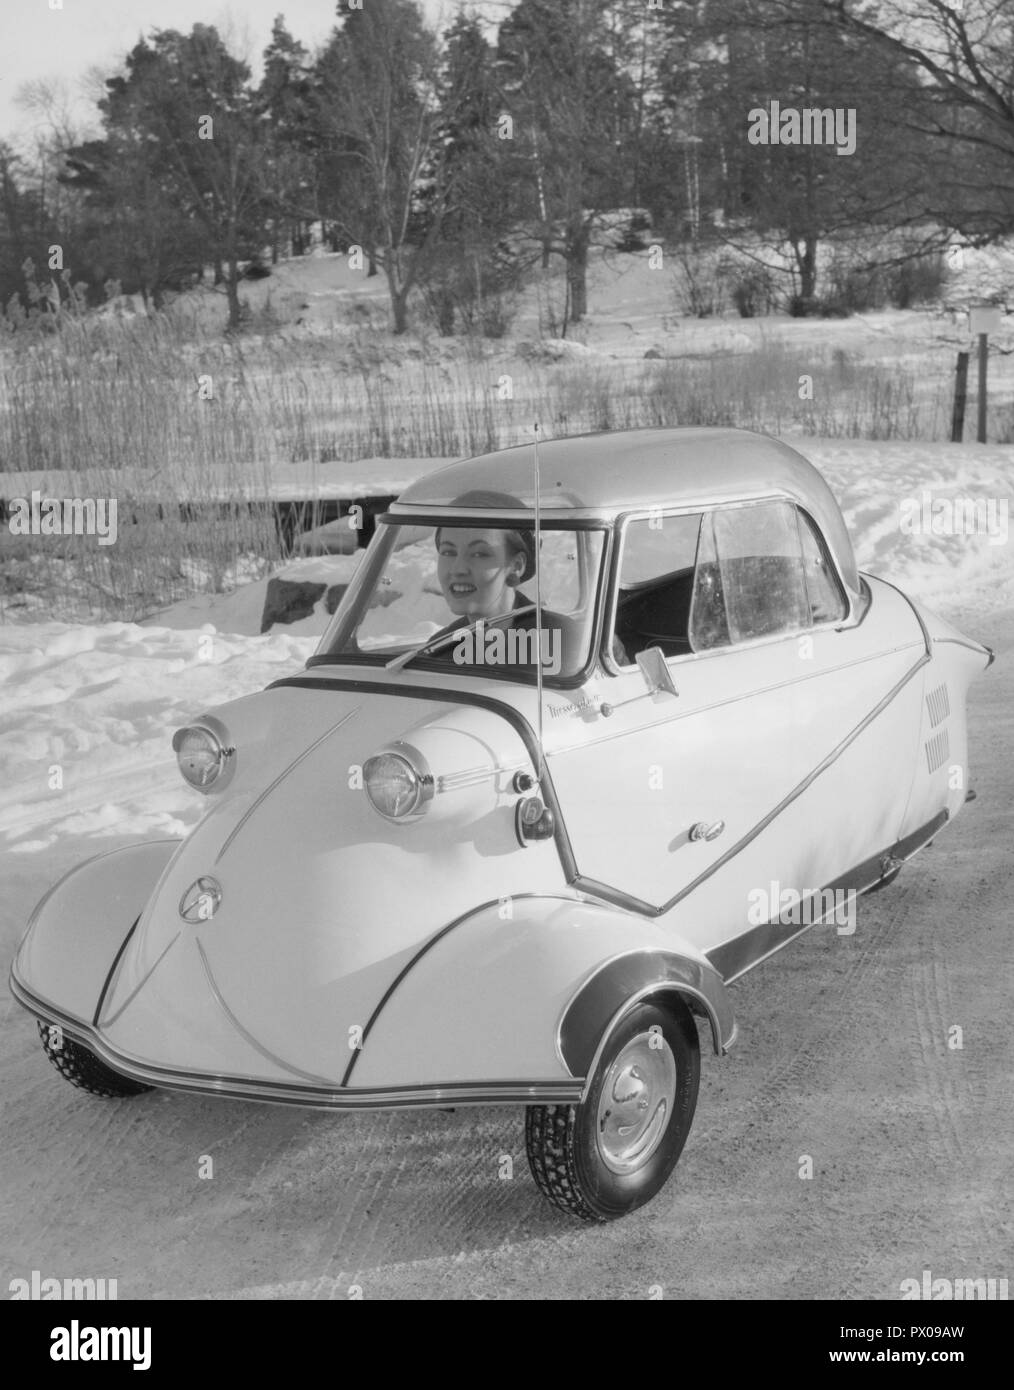 Guida invernale negli anni cinquanta. Una giovane donna è la guida la microcar tedesca Messerschmitt KE200. A tre ruote auto di piccole dimensioni con abbastanza spazio per montare due adulti e un bambino in auto. La vettura è stata fabbricata tra 1955-1964. La Svezia 1955 Foto Stock